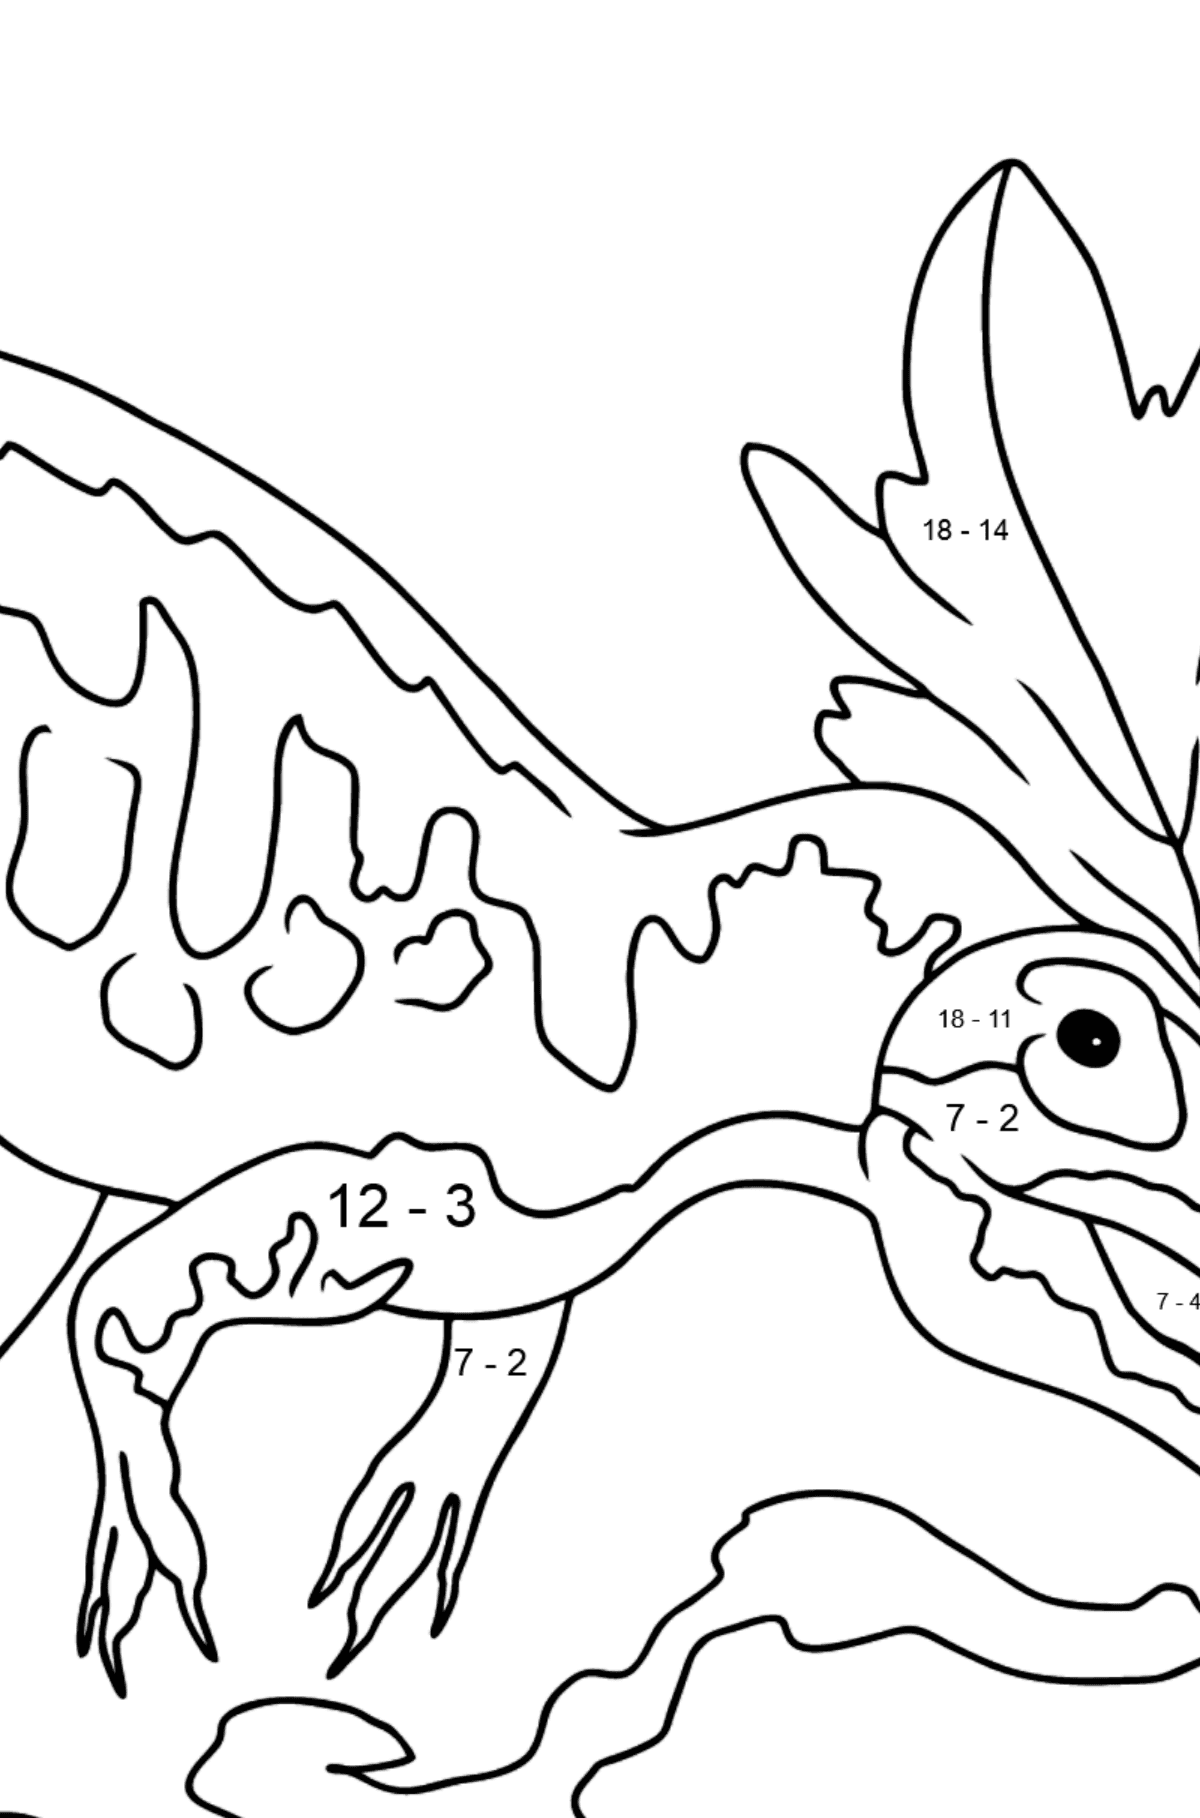 Desenho de Alossauro para Colorir - Colorindo com Matemática - Subtração para Crianças